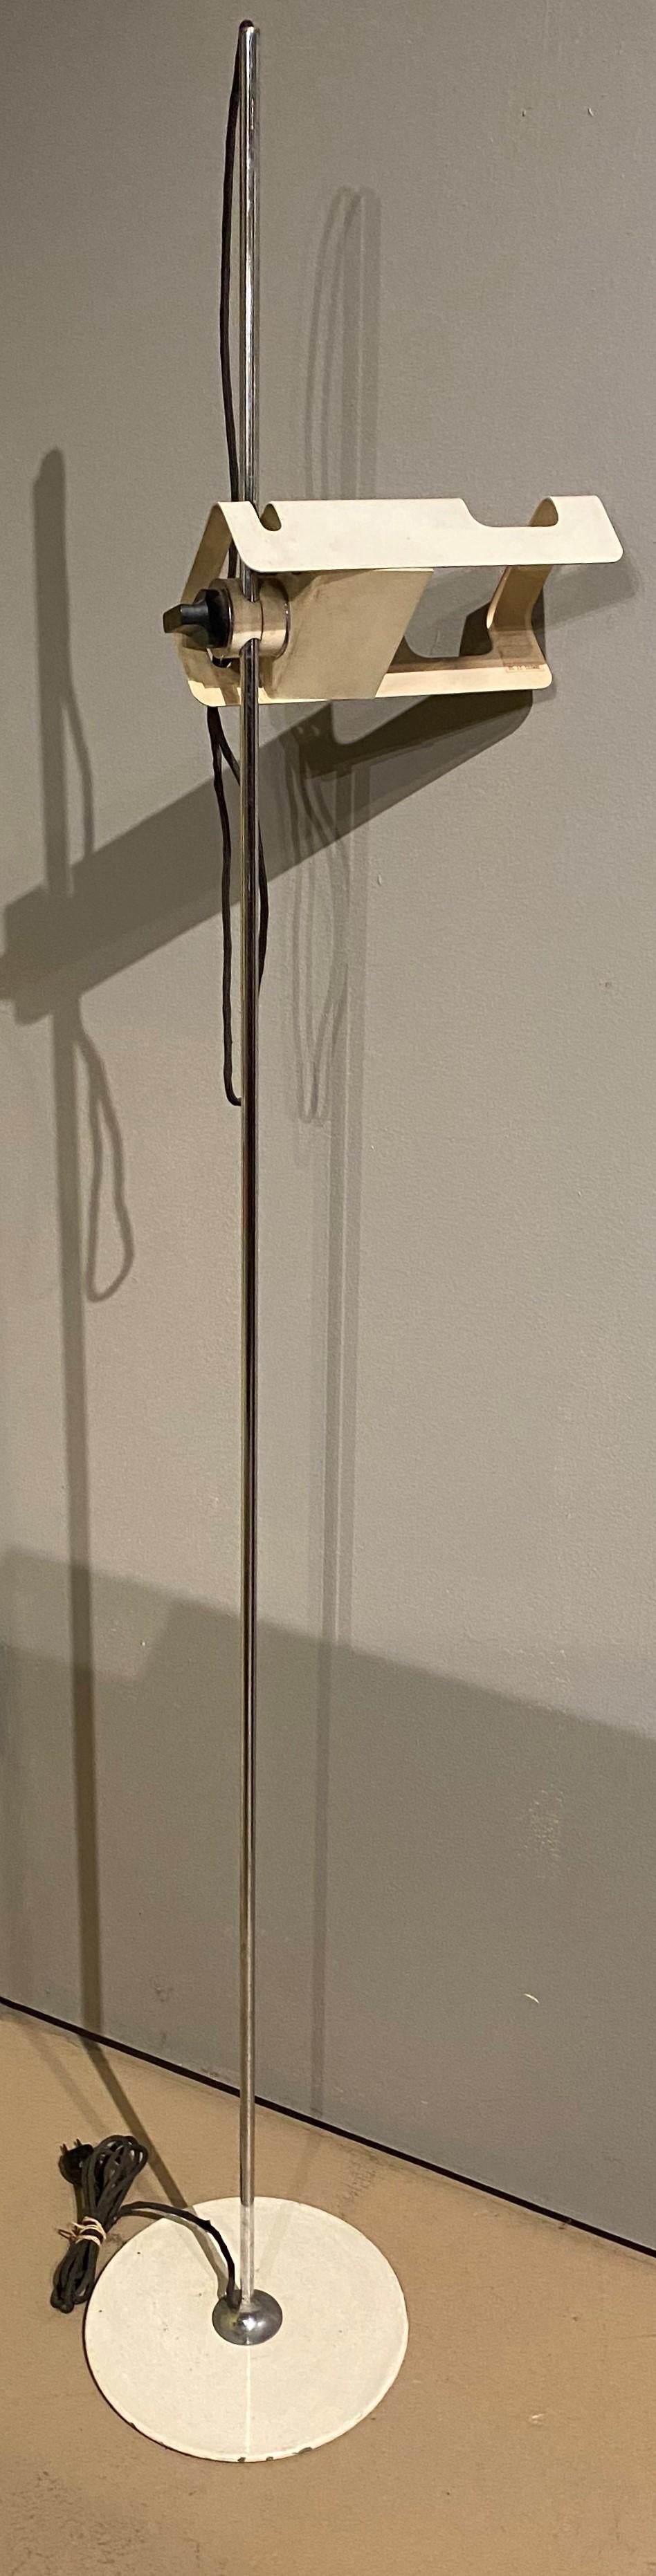 Un beau lampadaire araignée réglable en métal, blanc et chrome, de style moderne du milieu du siècle, conçu par Joe Colombo pour Oluce en Italie, vers les années 1960. Colombo a étudié l'art à l'Académie Brera de Milan et a rejoint le mouvement de